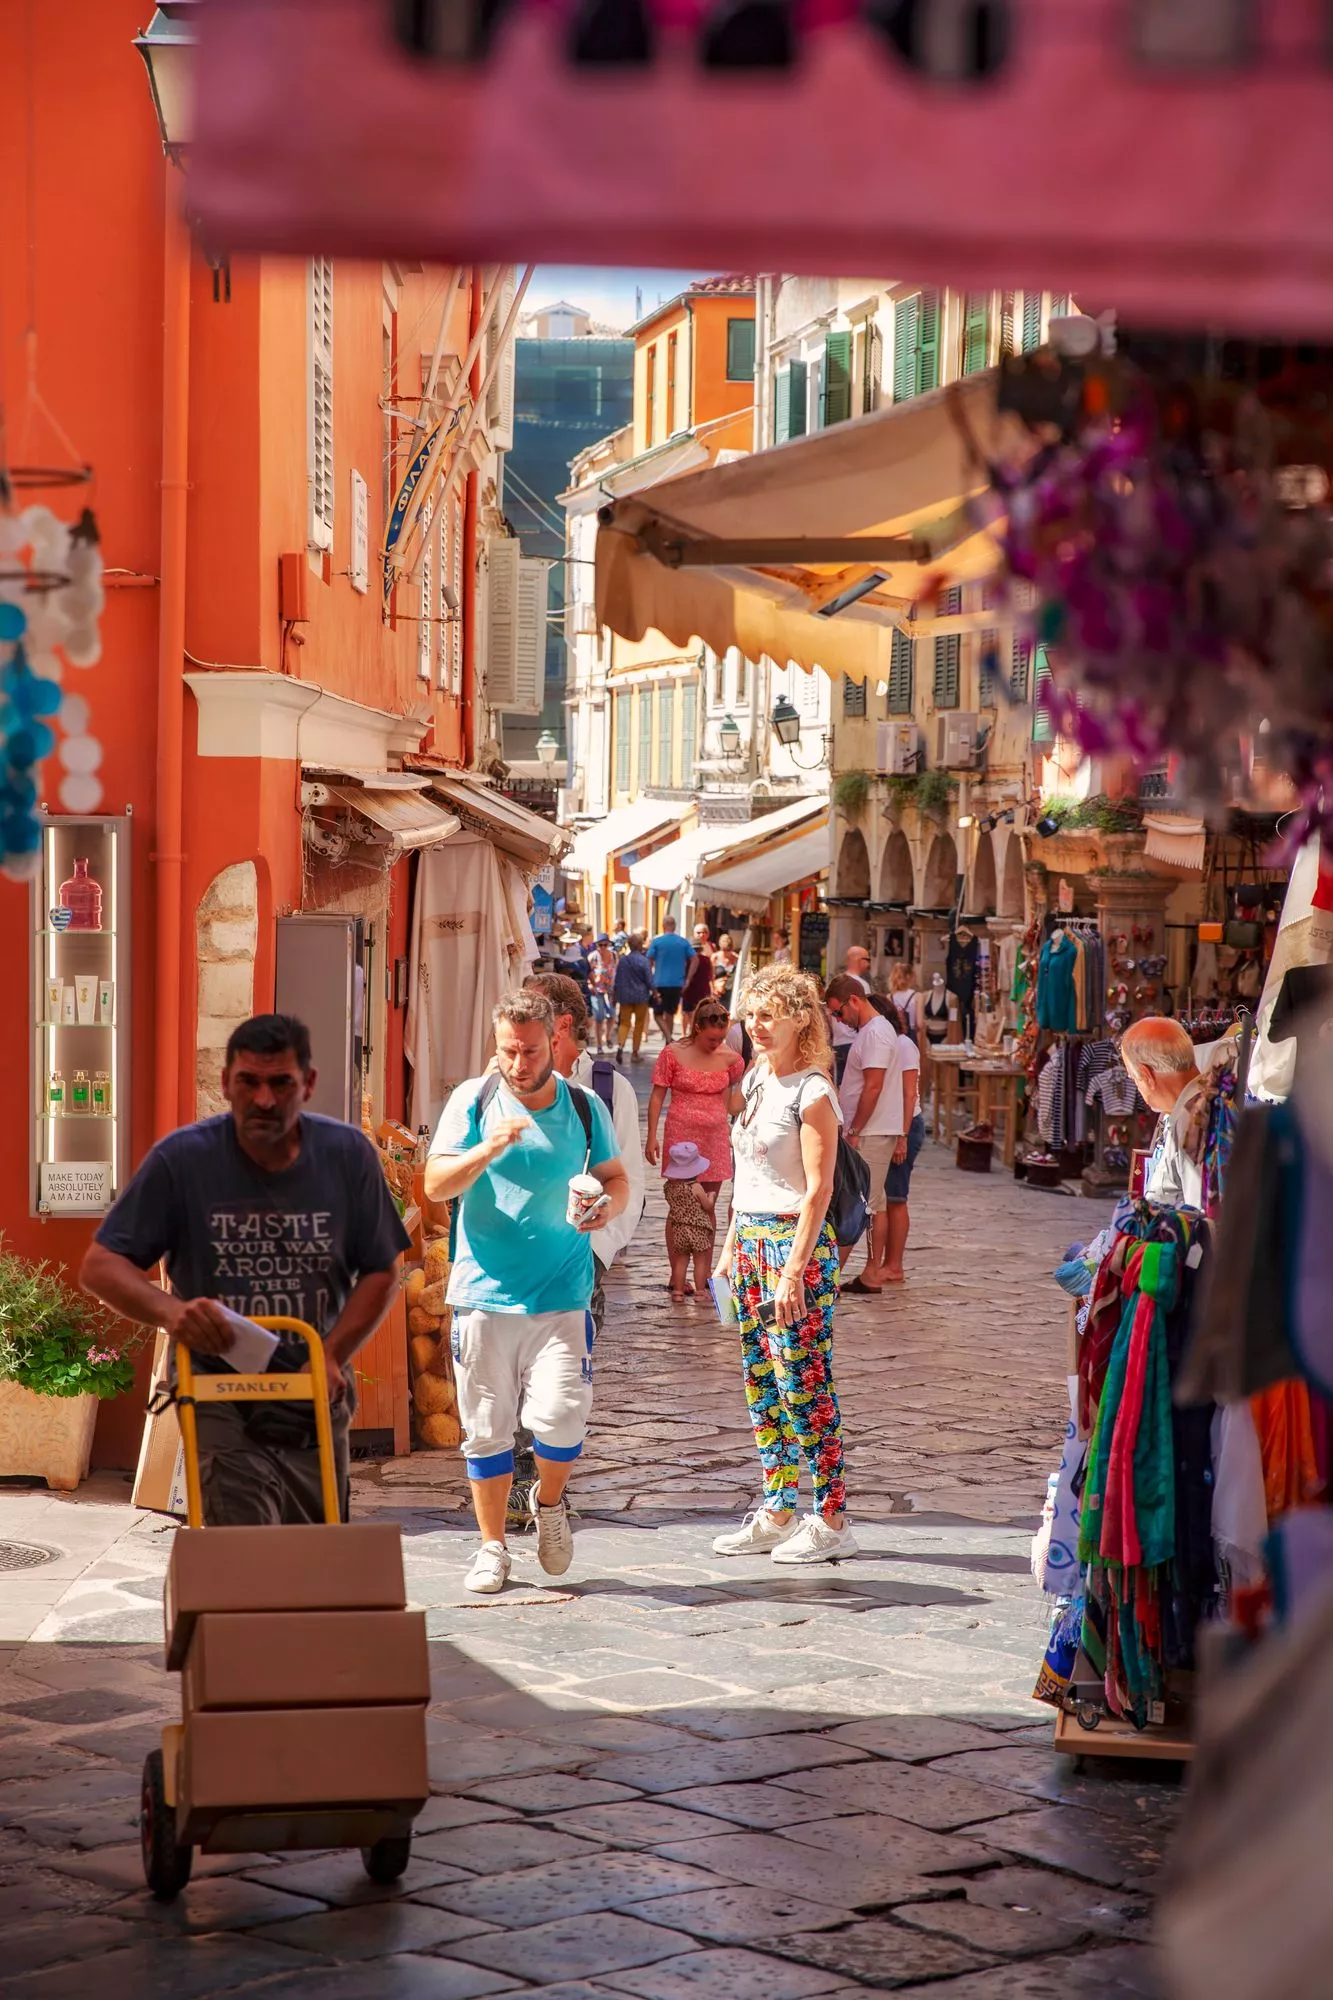 Korfu: Aamuvarhaisella vanhan kaupungin kaduilla puhaltelee vilvoittava tuuli. Matkailijalle tarjotaan kaikkea rihkamasta näppäriin käyttöesineisiin ja jalometallikoruihin. Mausteet, mausteseokset ja oliivista tehdyt tuotteet ovat suosittuja. © Marjo Tynkkynen